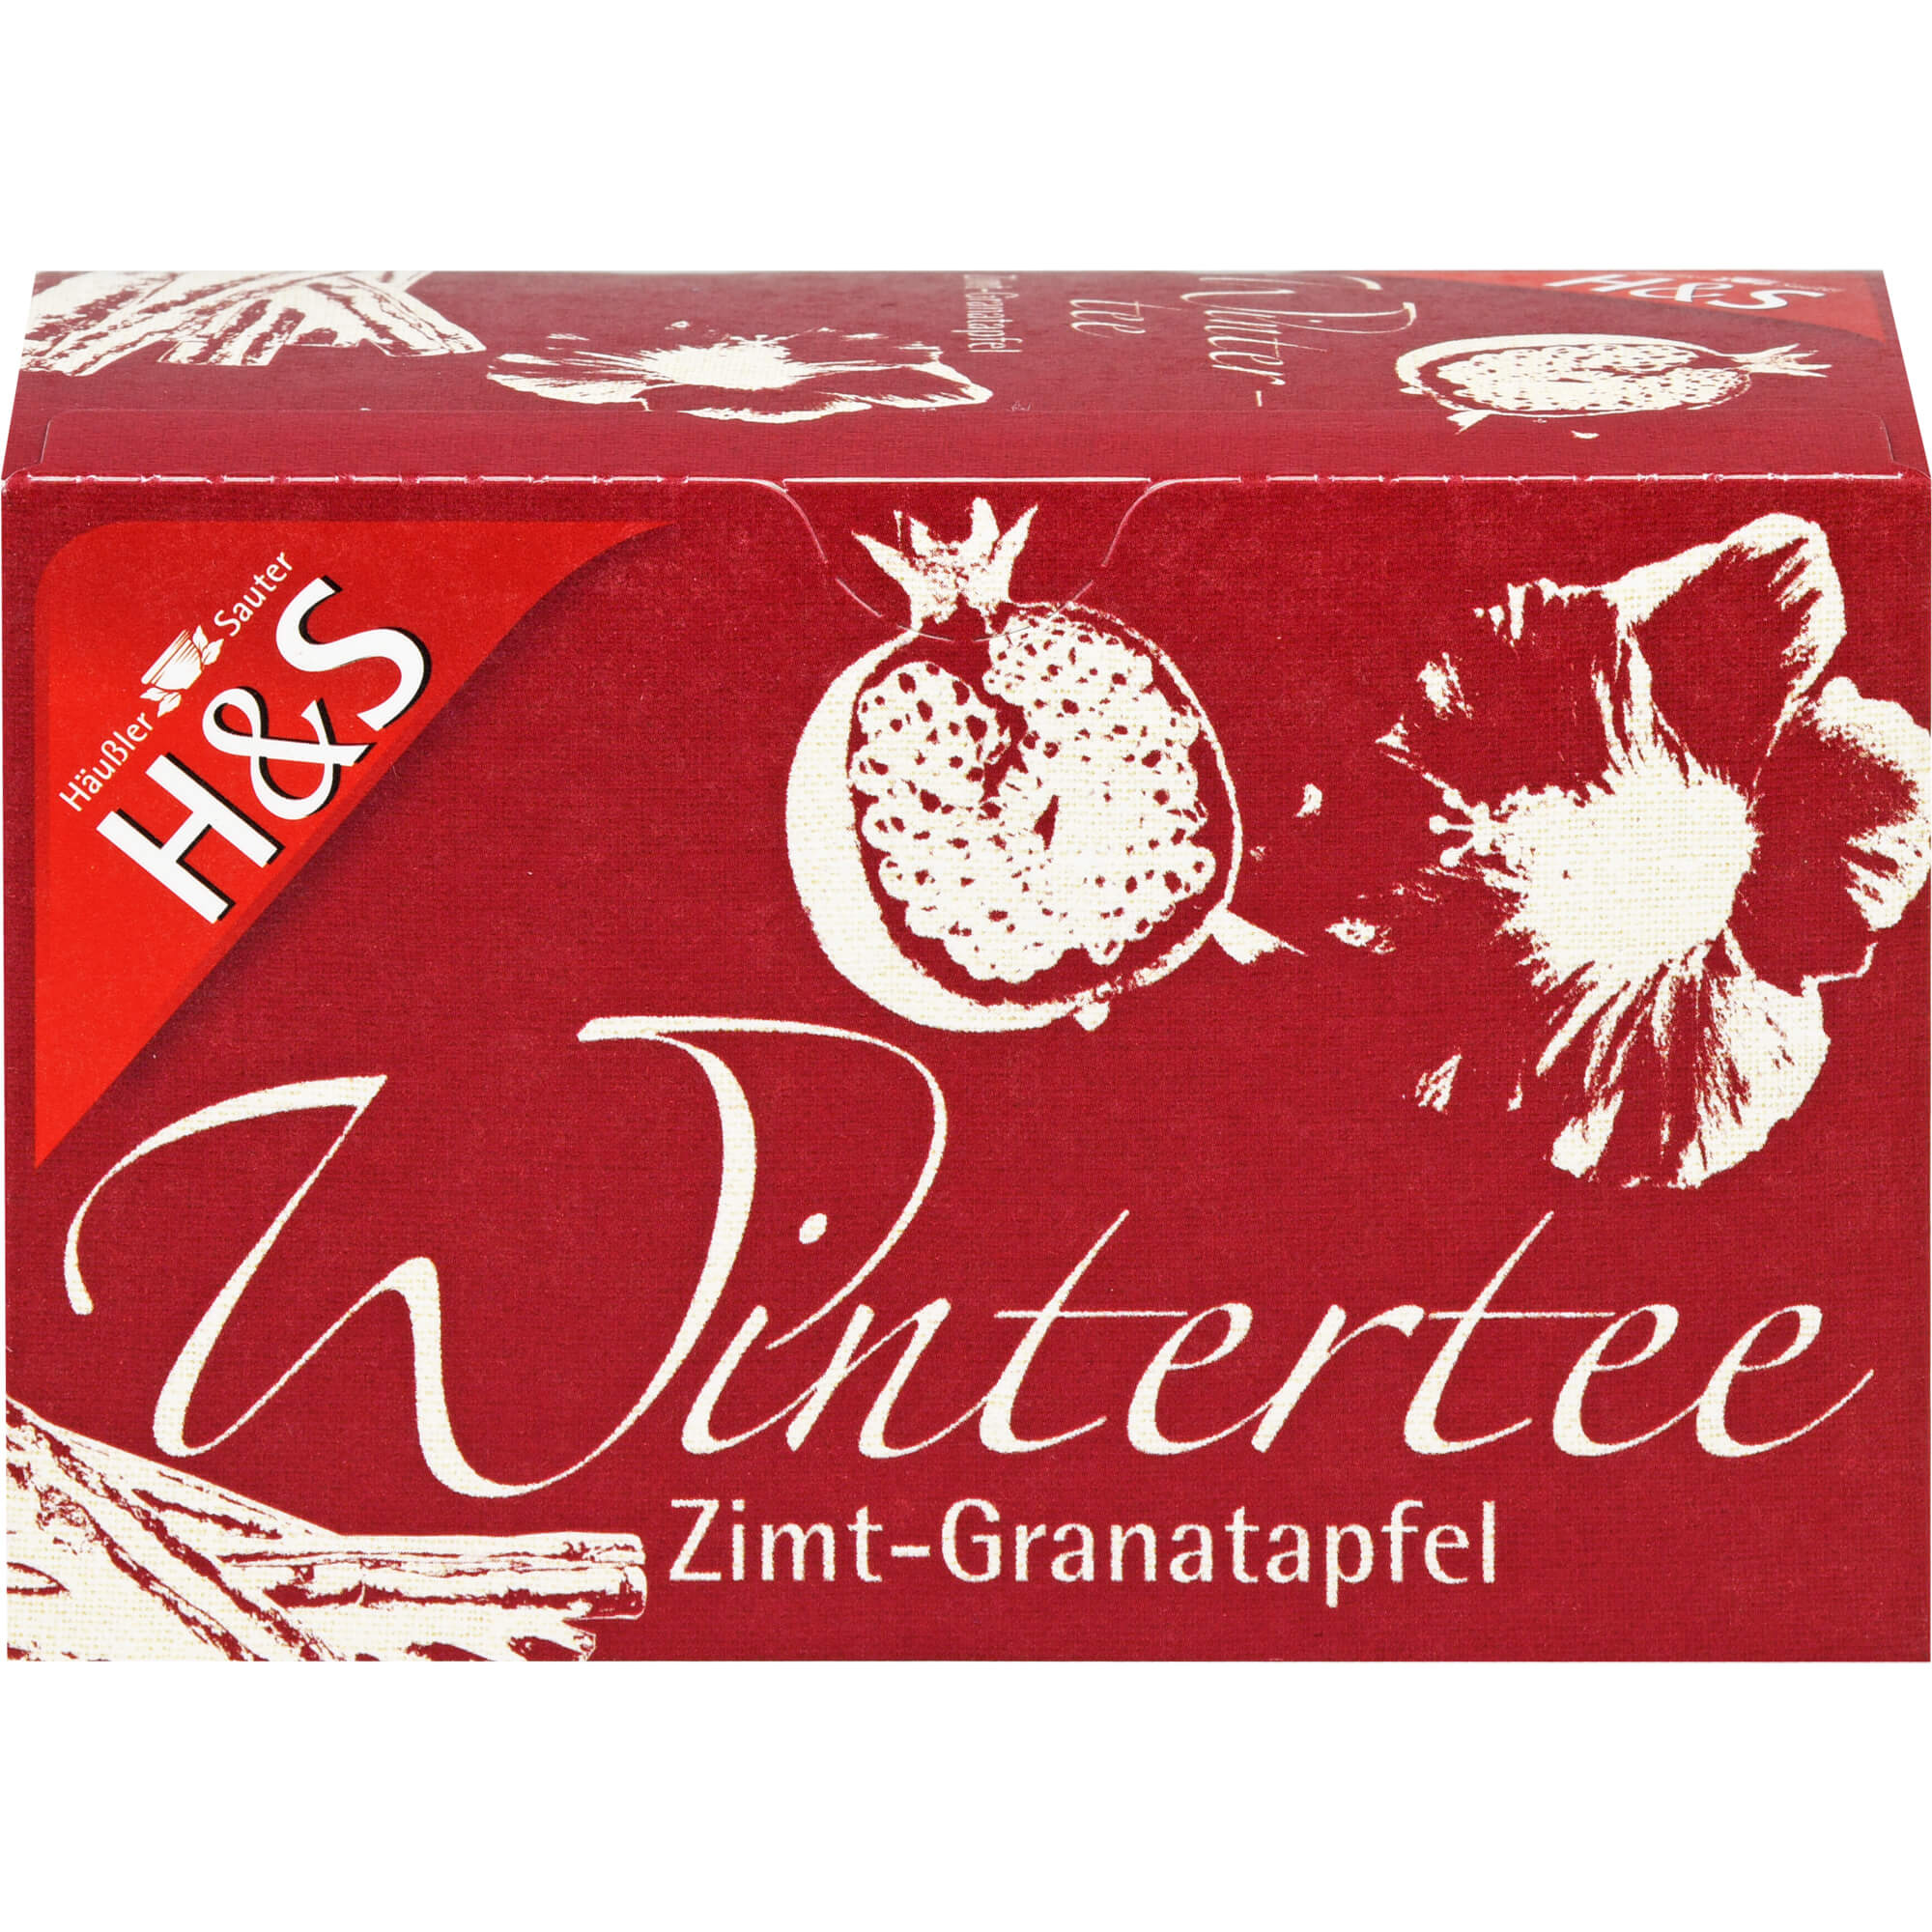 H&S Wintertee Zimt-Granatapfel Filterbeutel